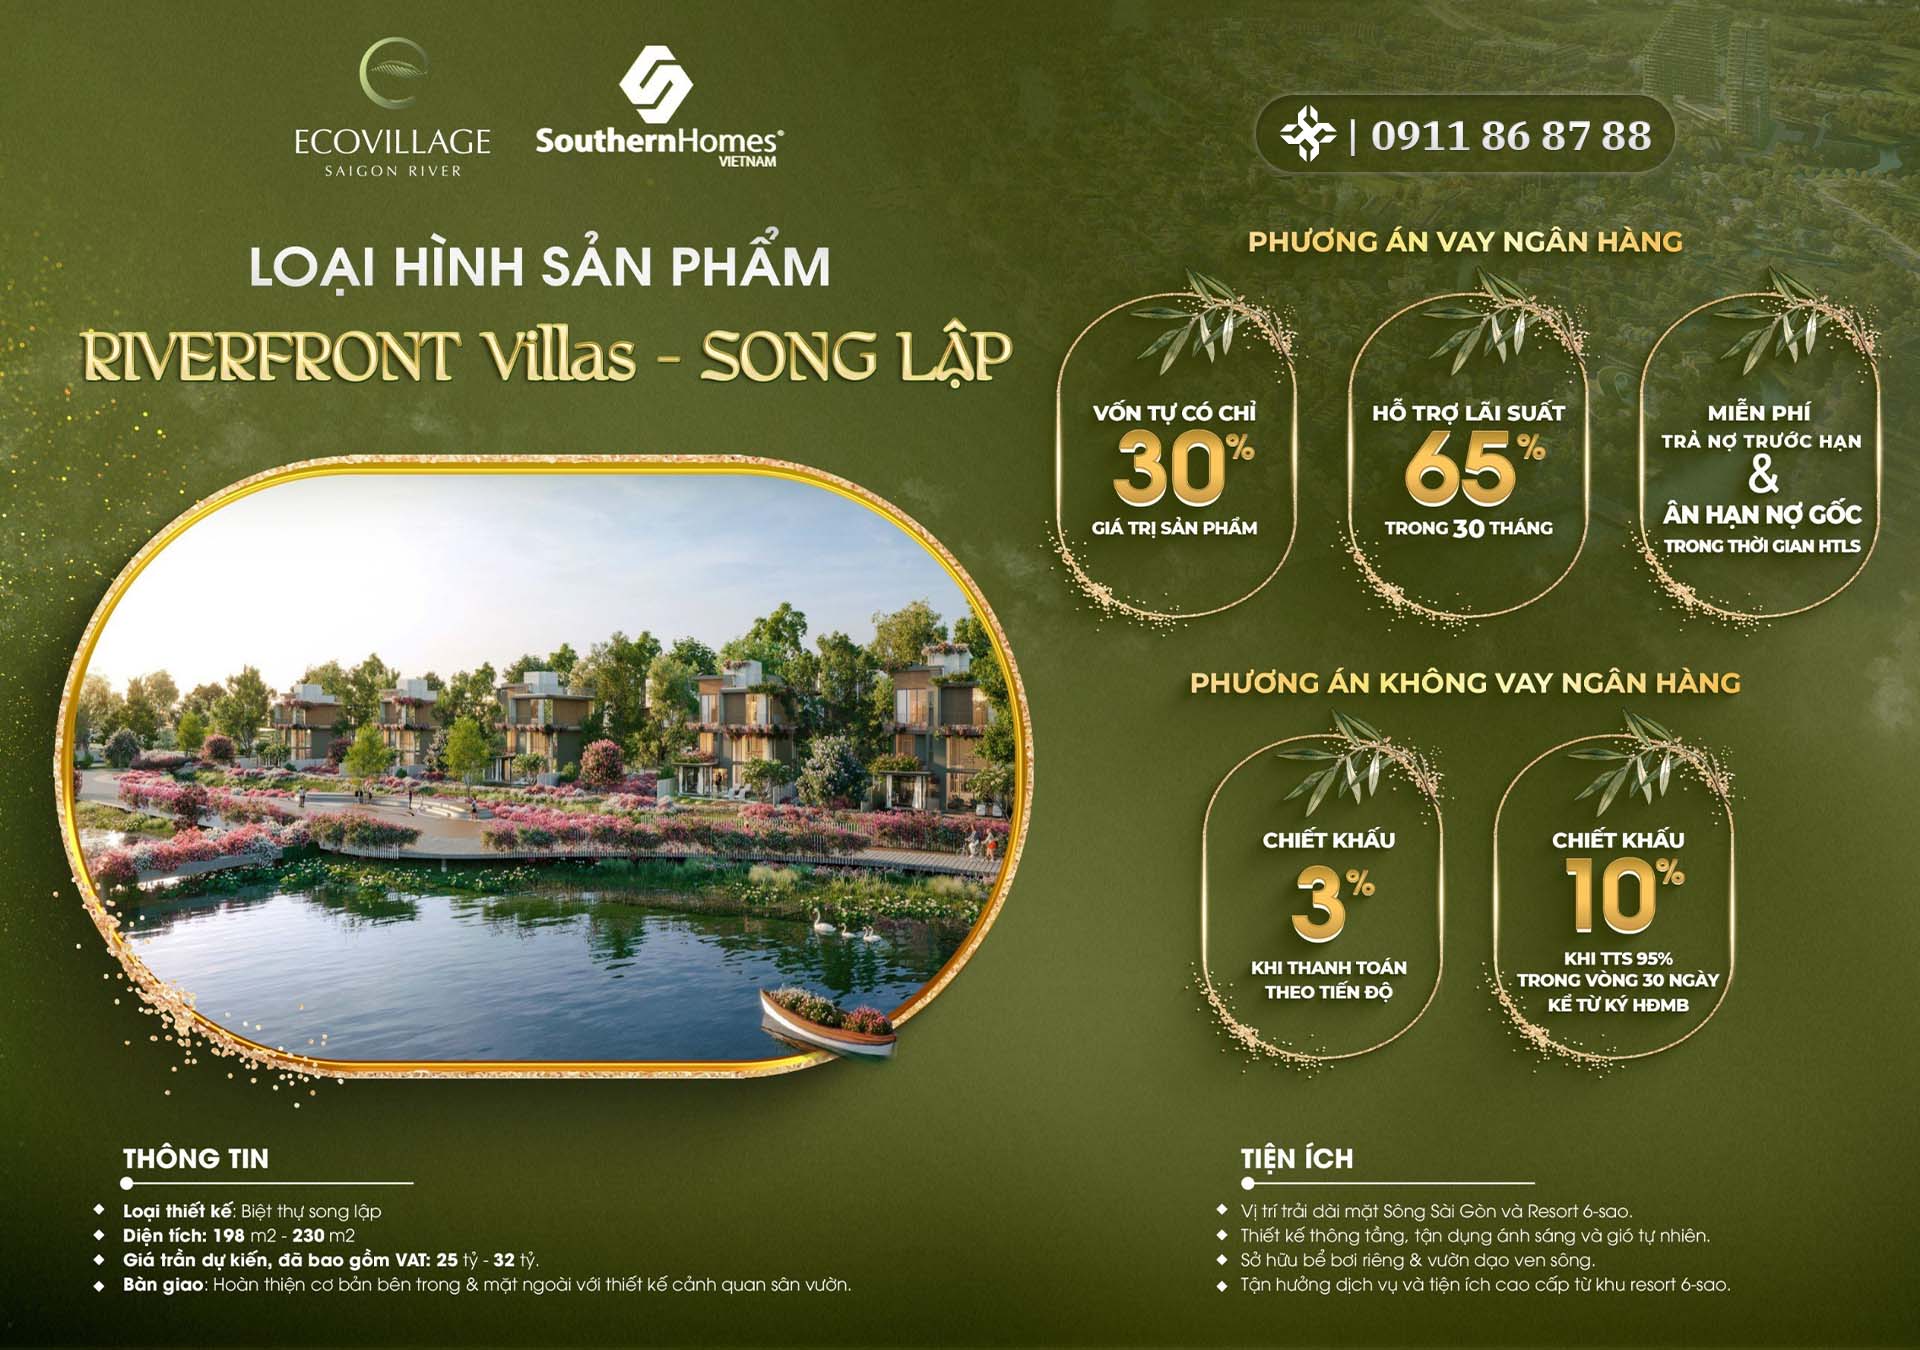 Ecovillage Saigon River mở bán nhà phố biệt thự